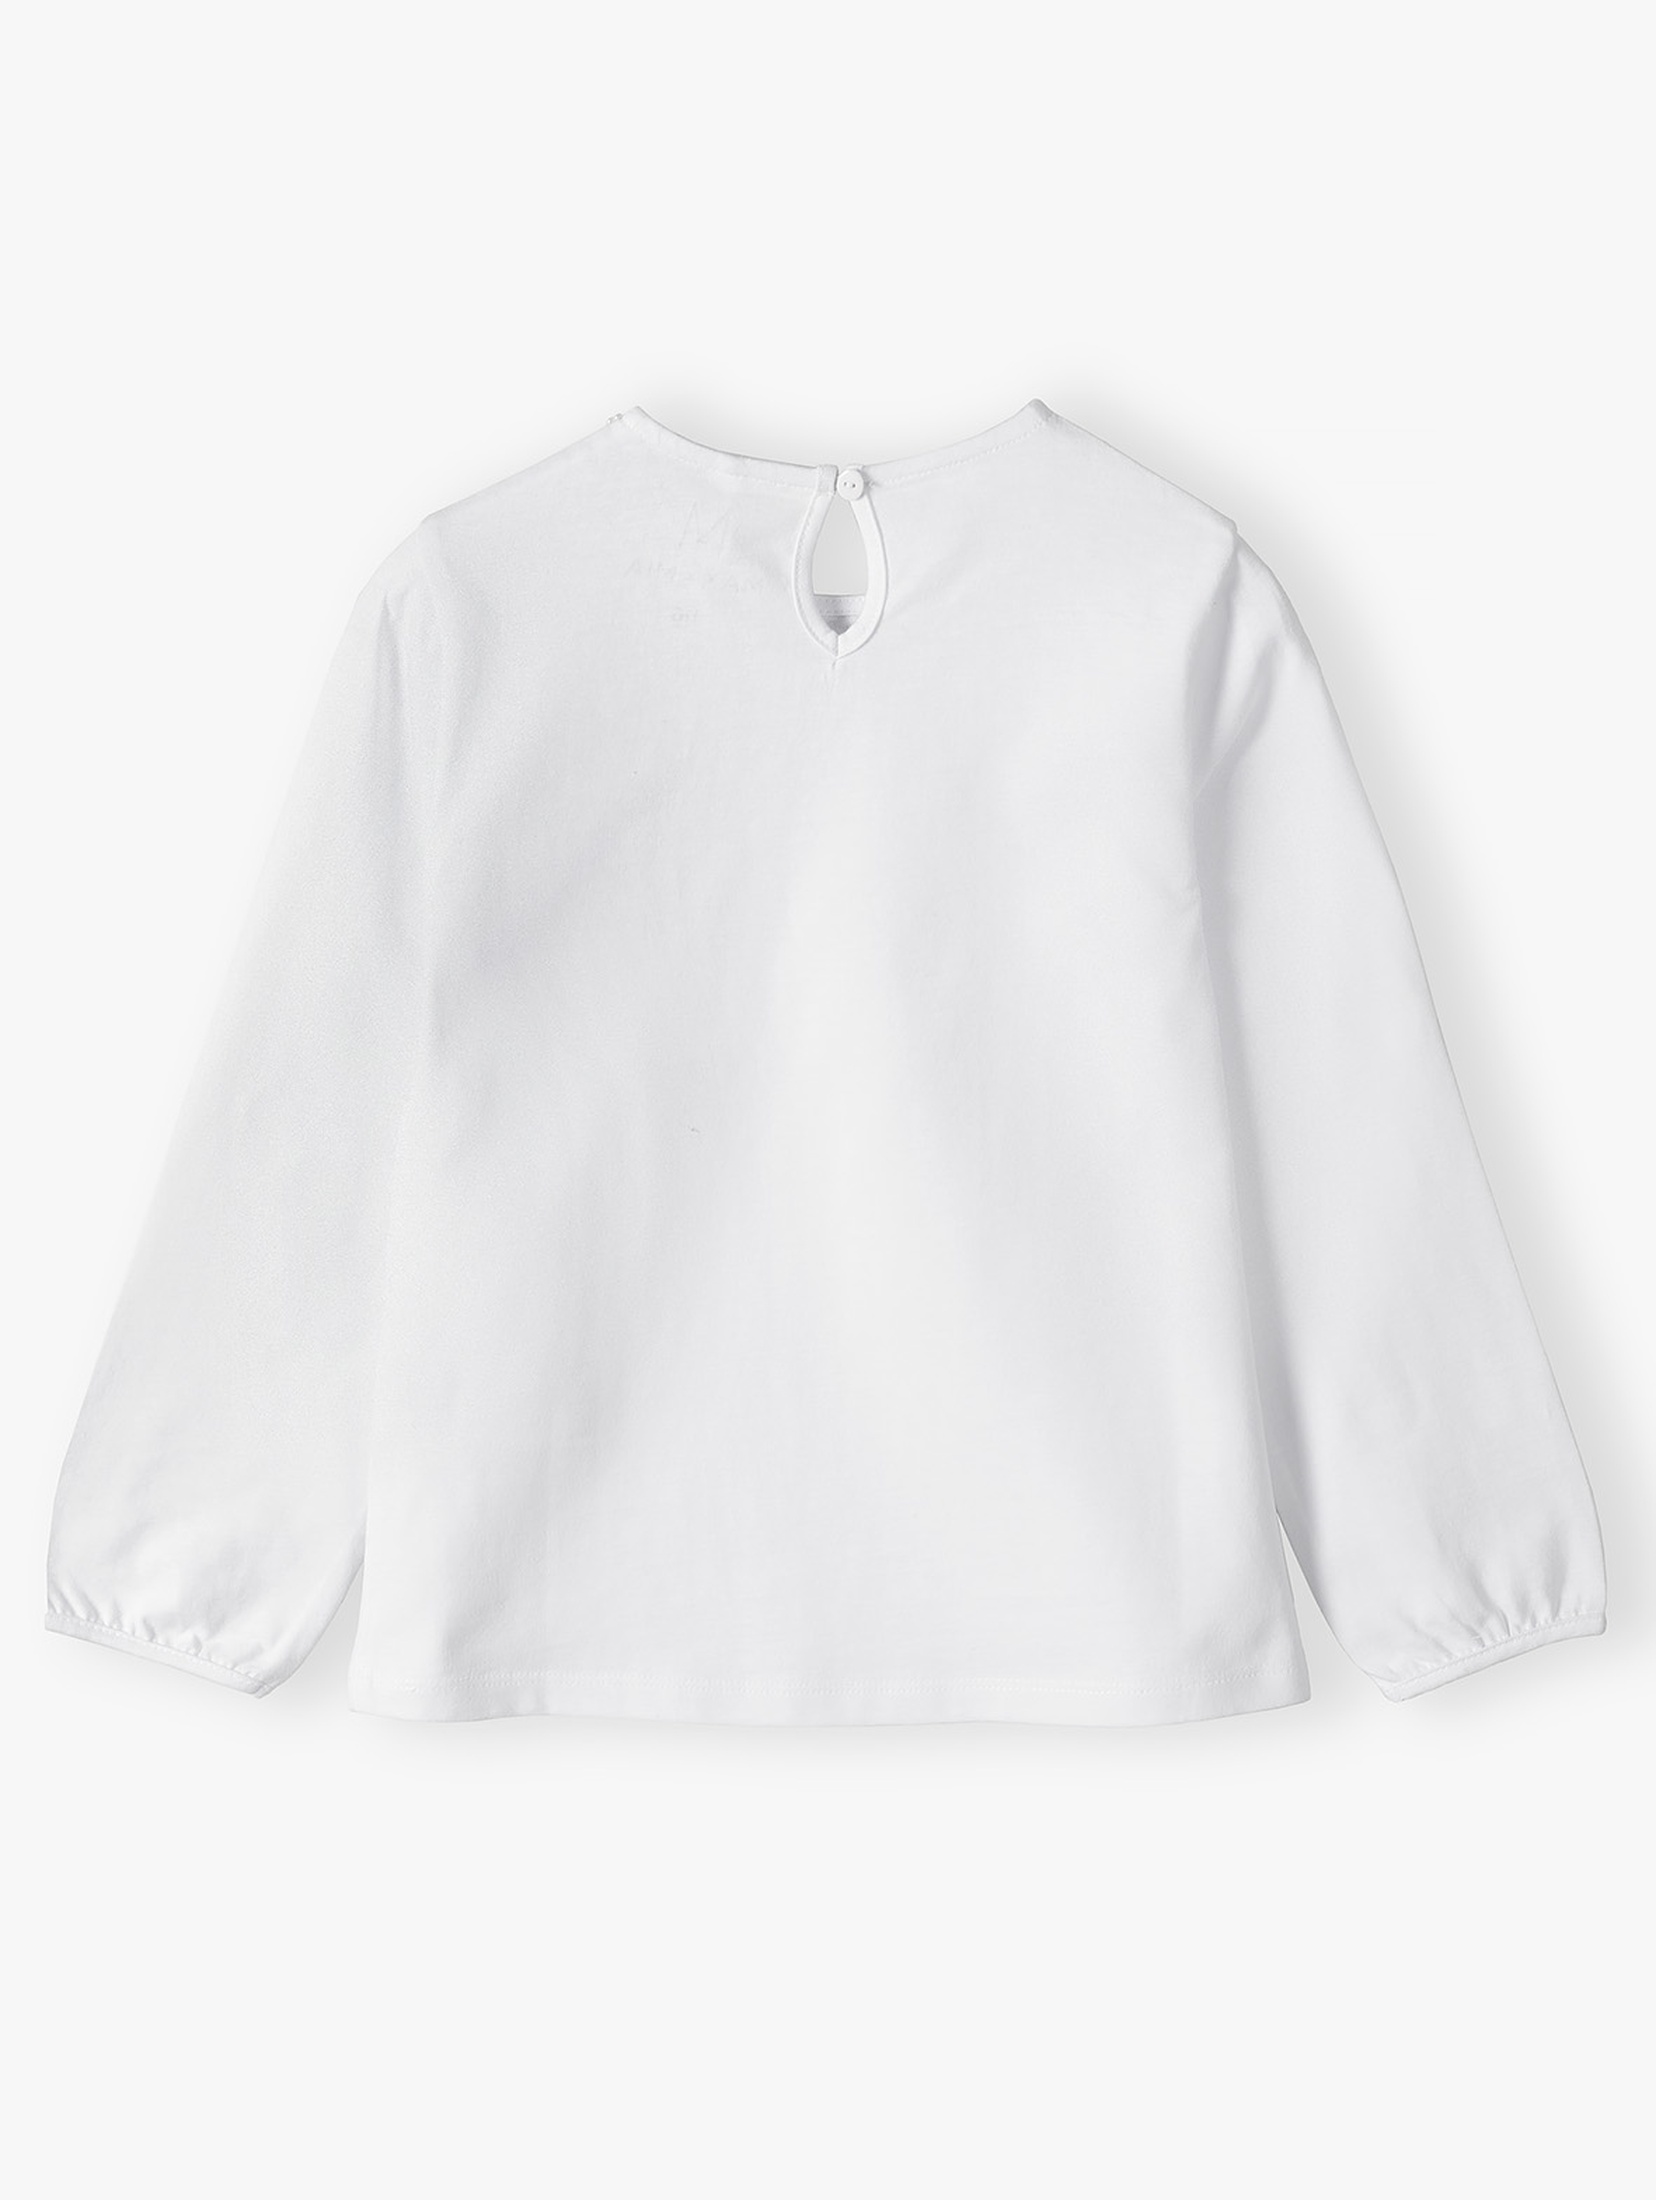 Biała elegancka bluzka dziewczęca z perełkami pod szyją